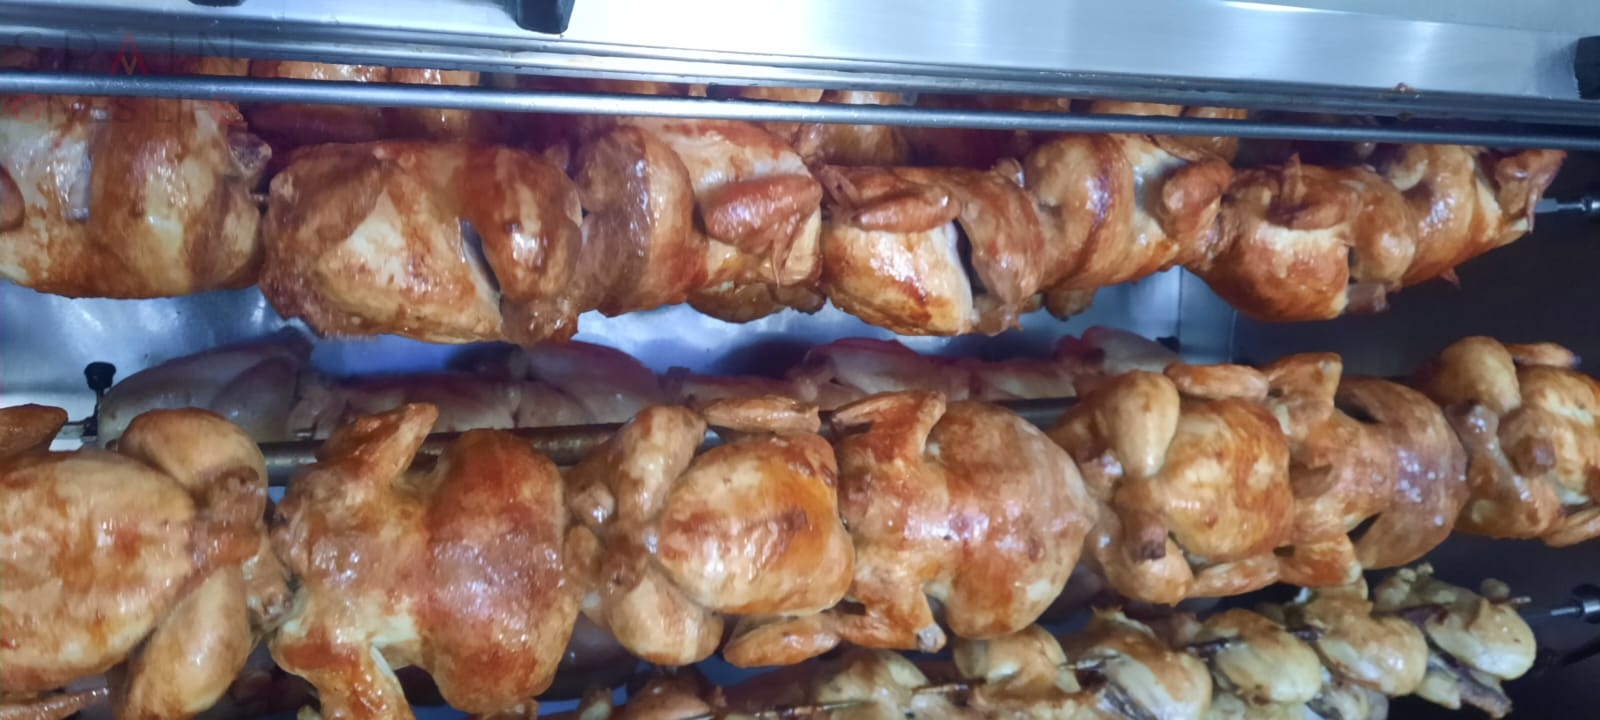 Pedir comida a domicilio en Plasencia El Rey del Pollo Comidas preparadas caseras